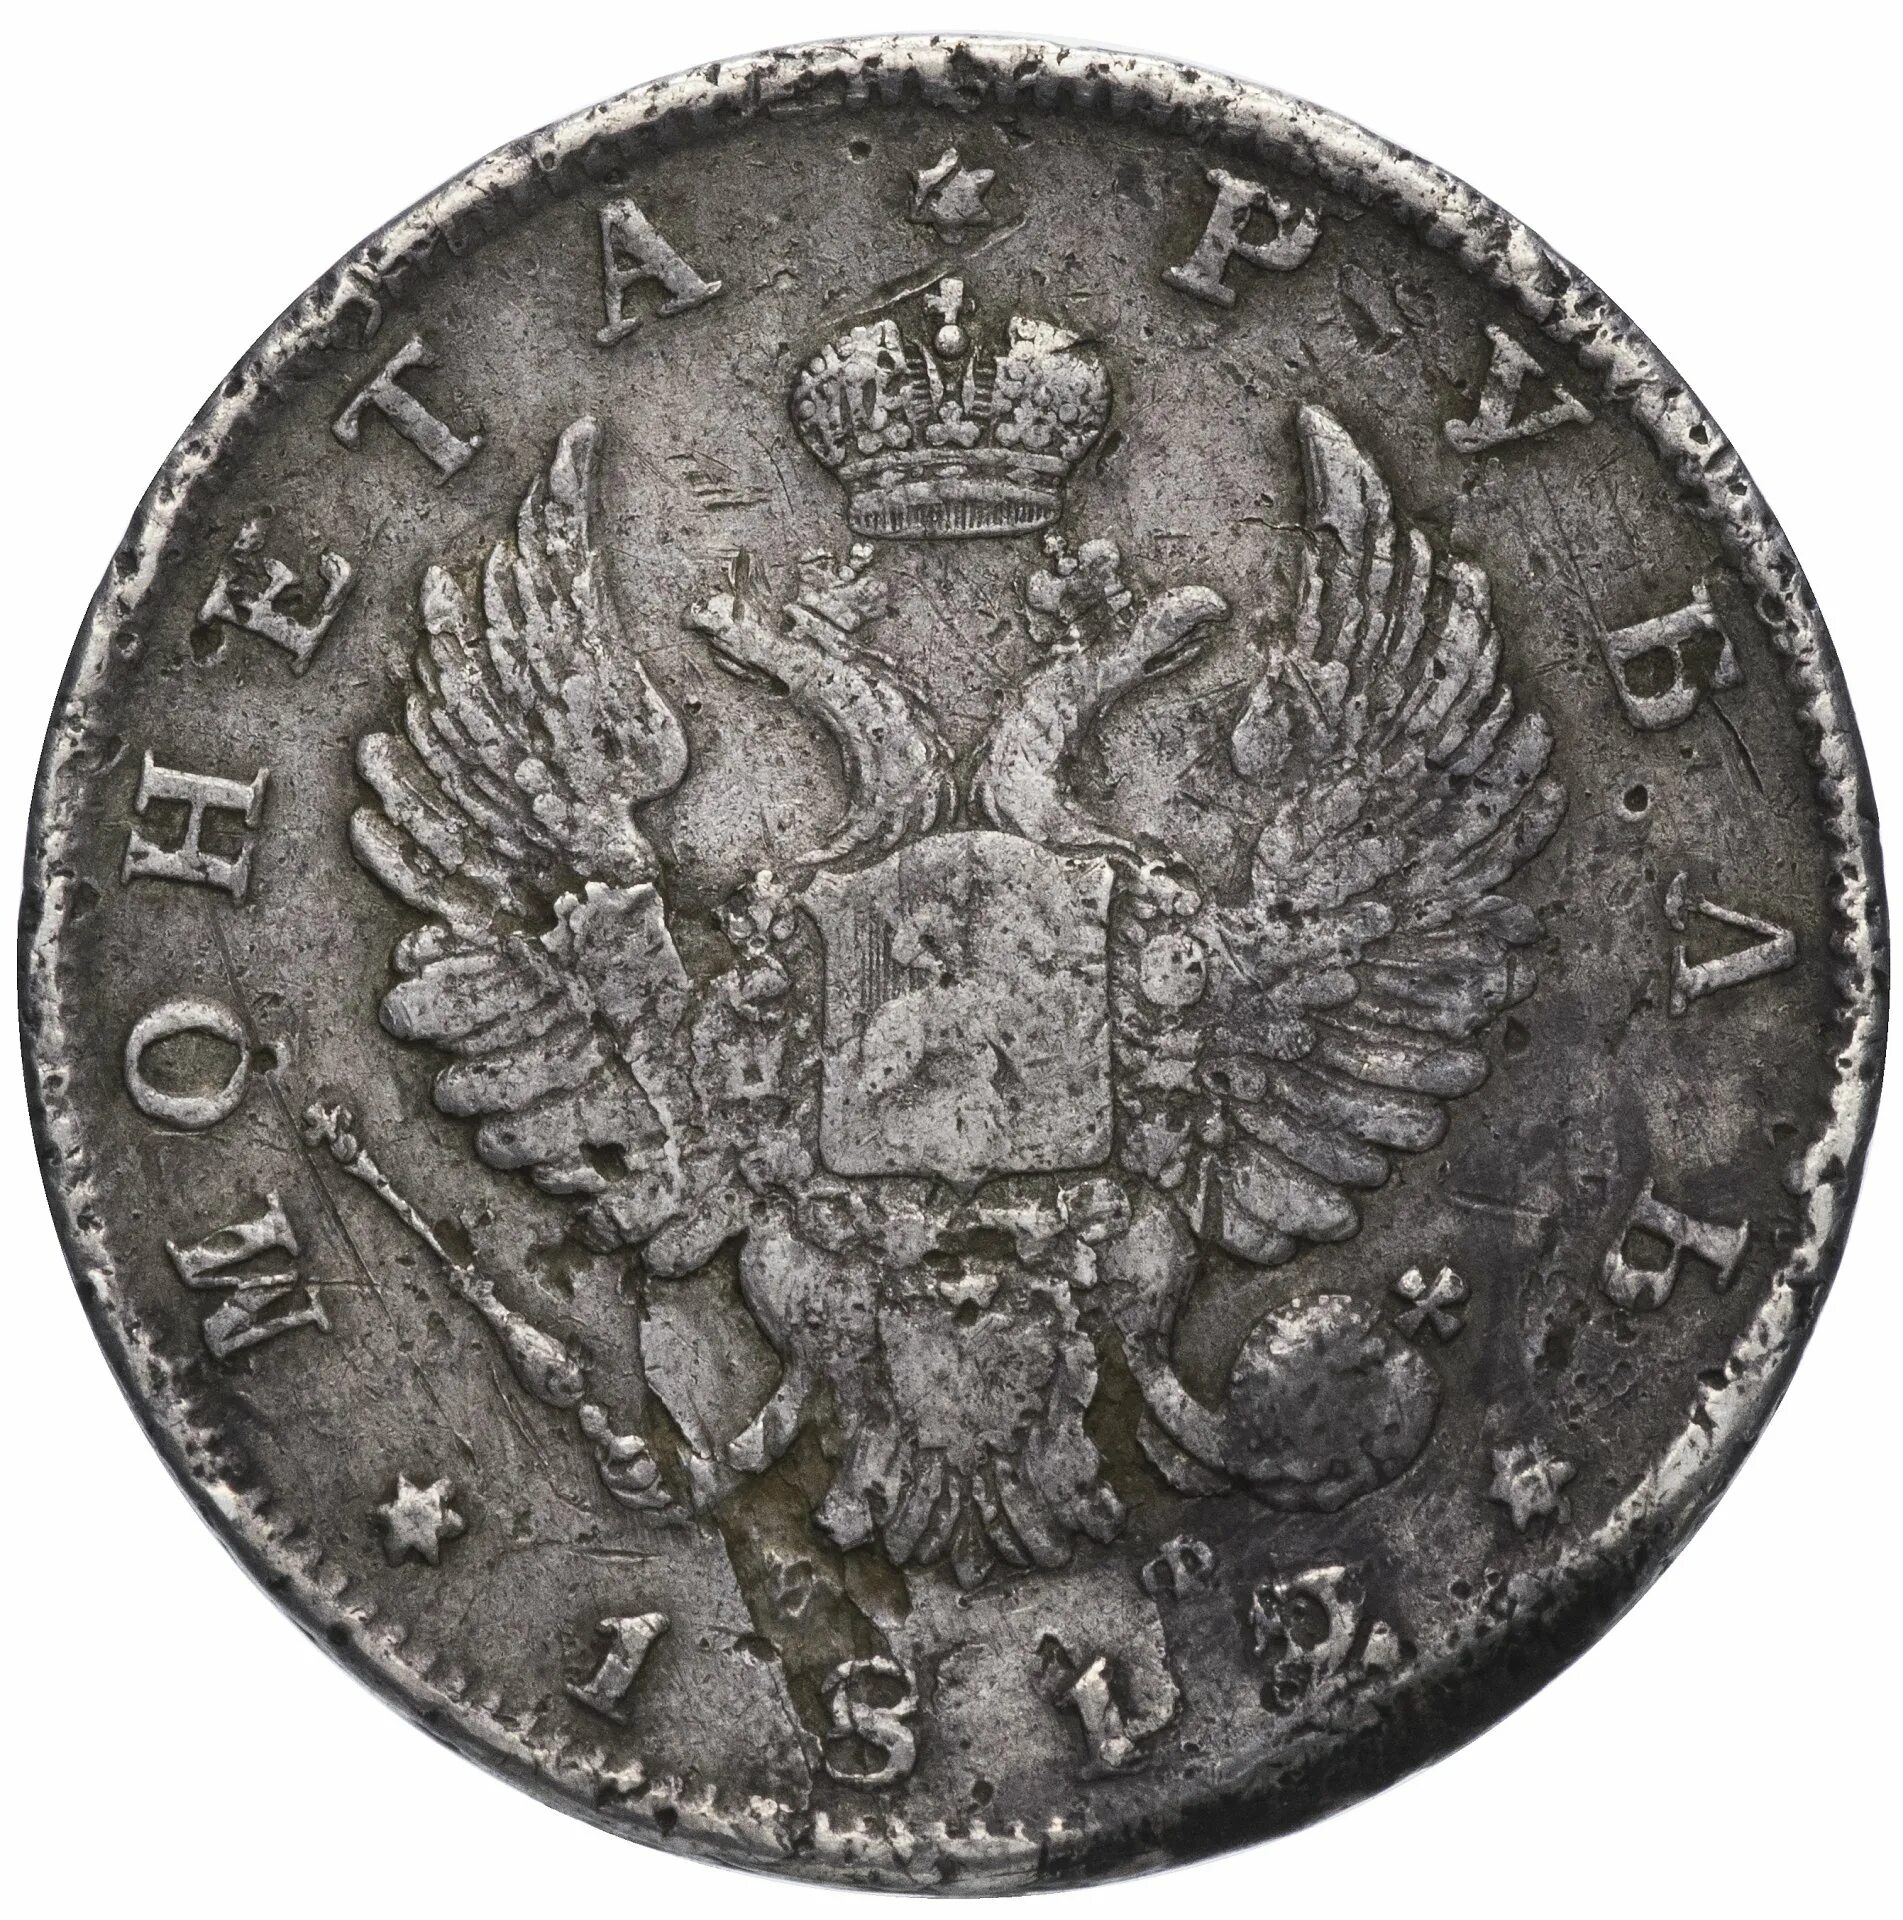 5 рублей 1812. Серебряный рубль 1812 года. Монета рубль 1812 года чистого серебра.